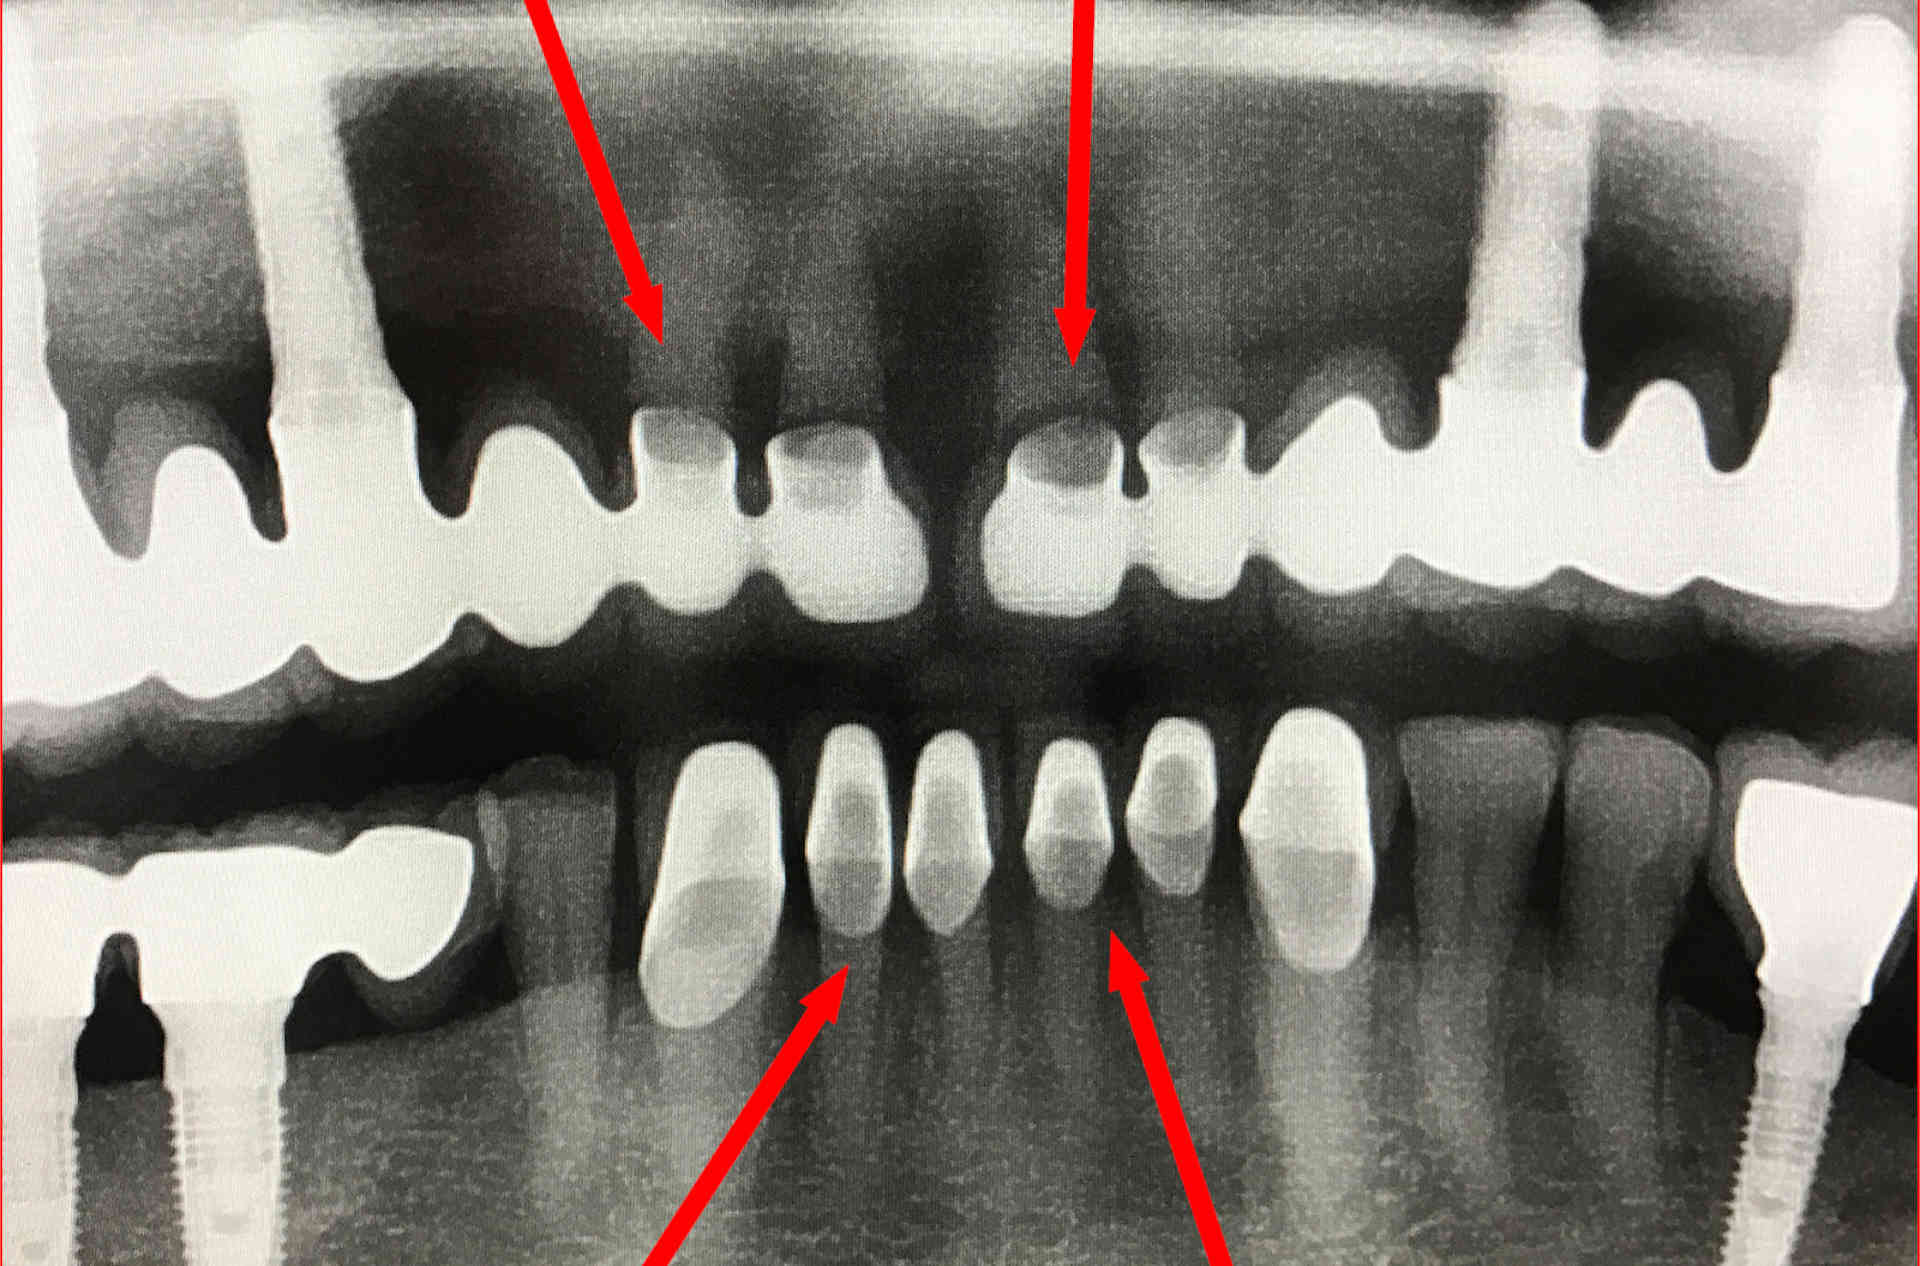 Röntgenbild von schlechtem Zahnersatz aus dem Ausland